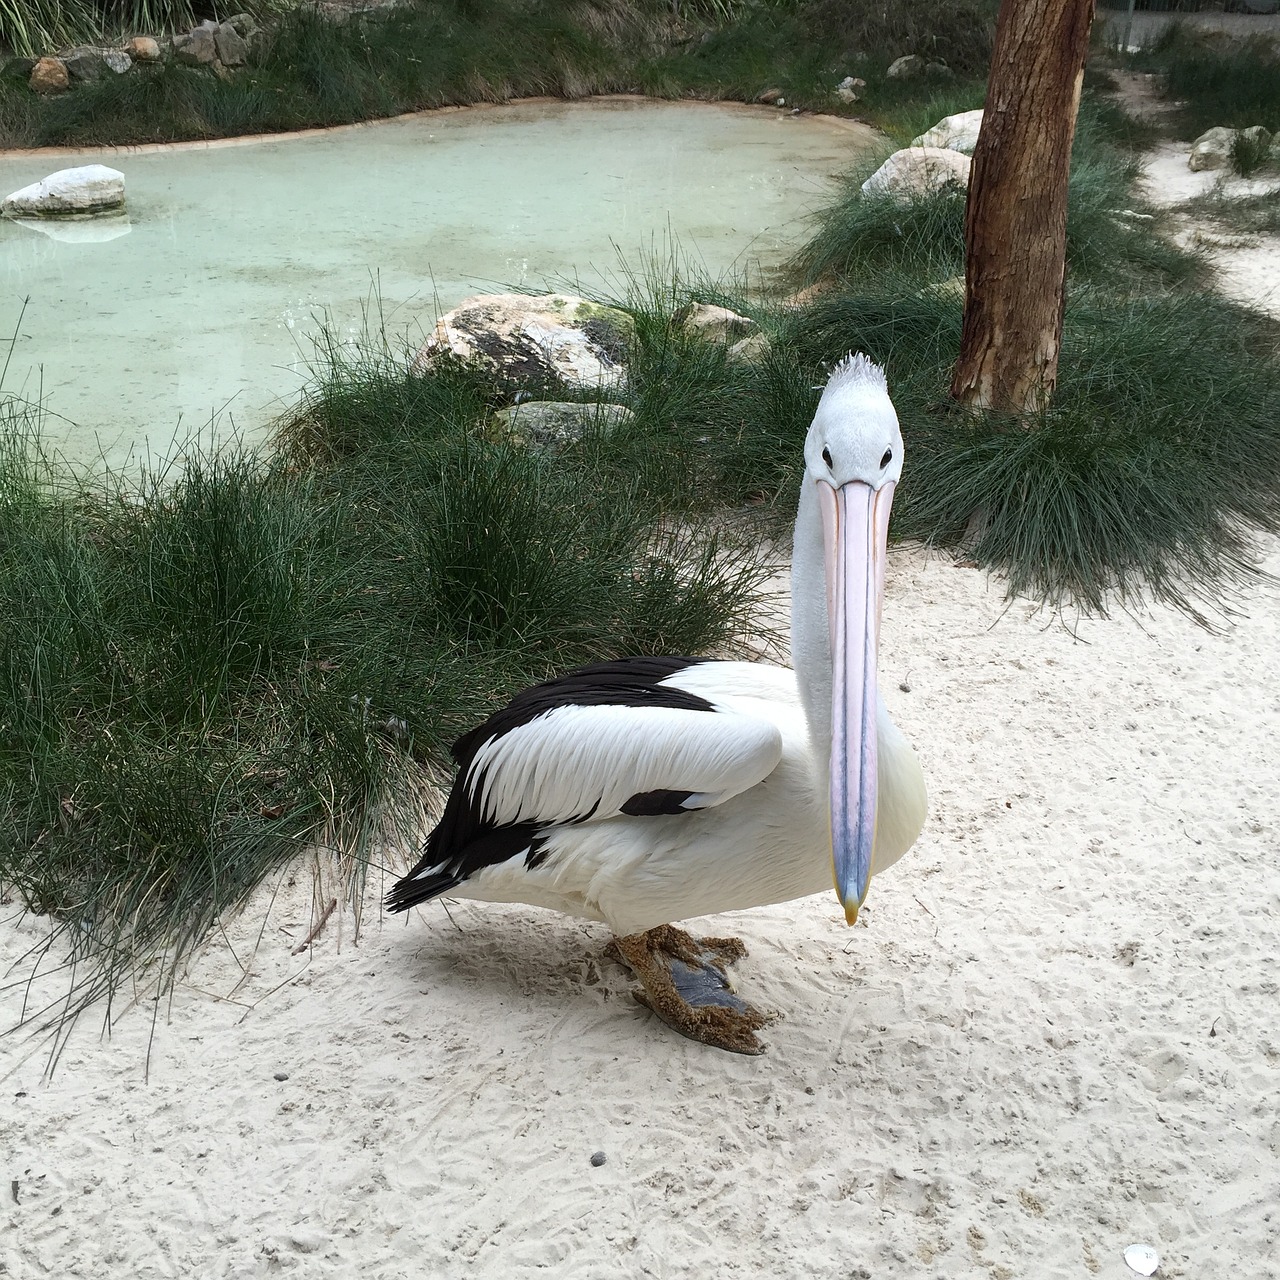 pelican bird beak free photo